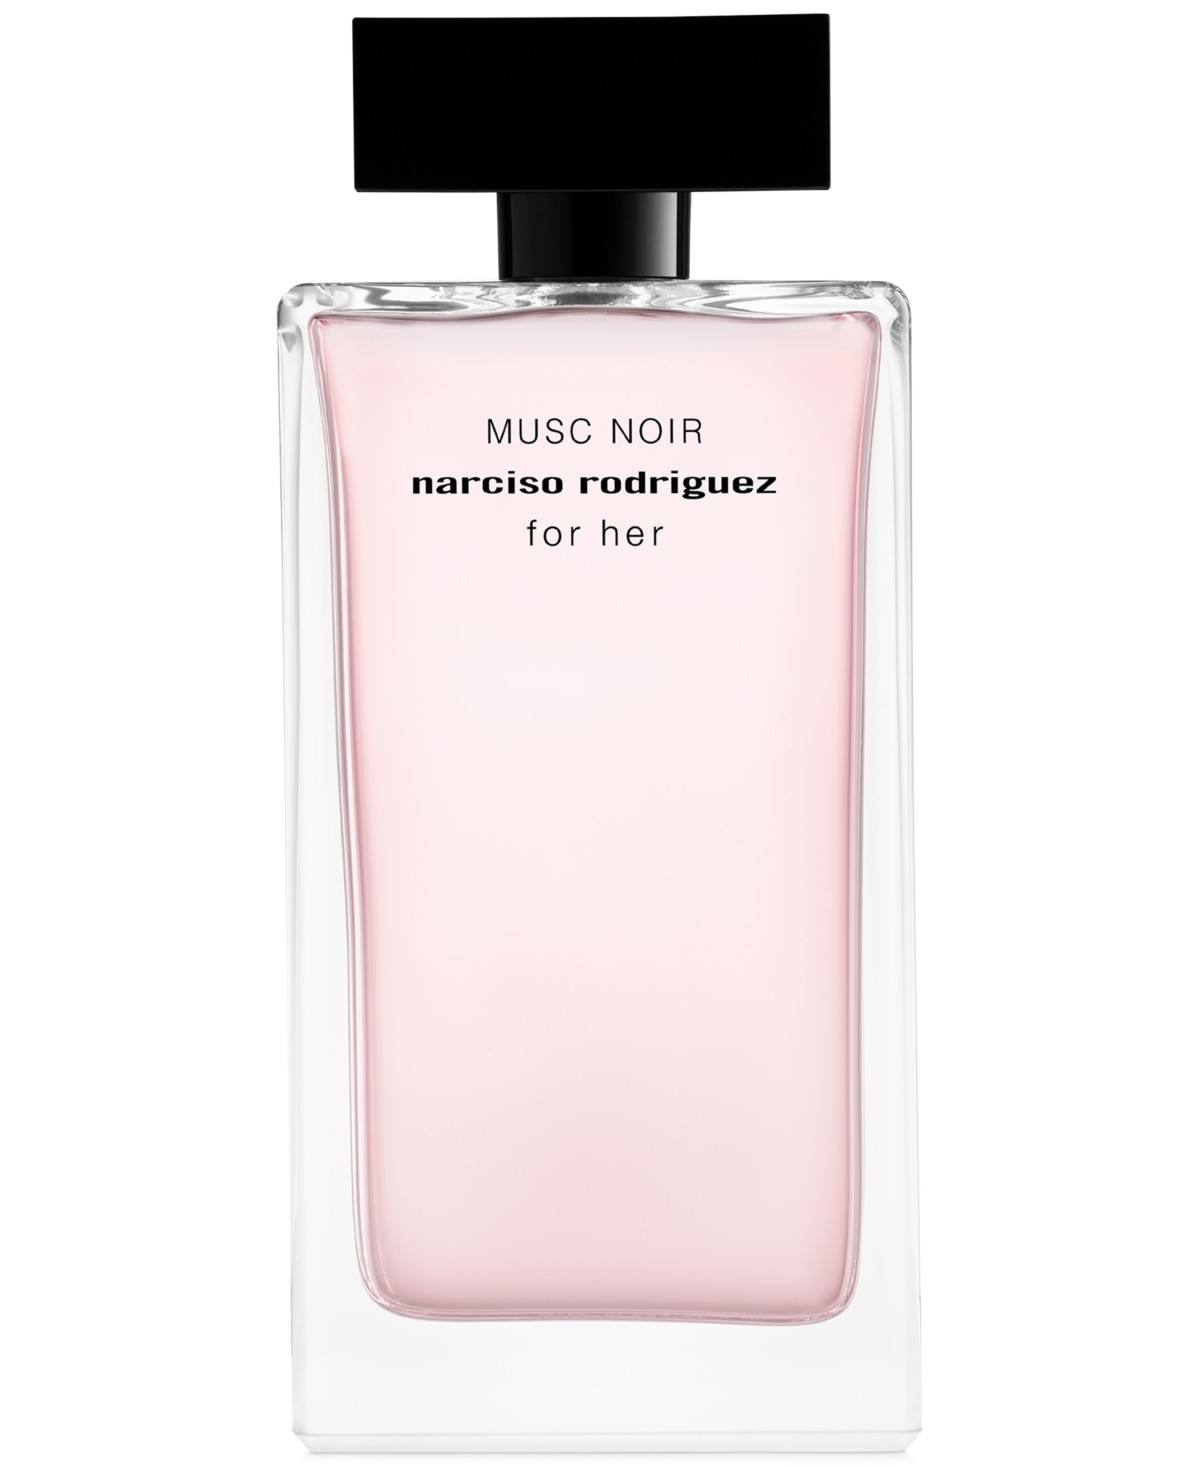 For Her Musc Noir Eau de Parfum, 5 oz.